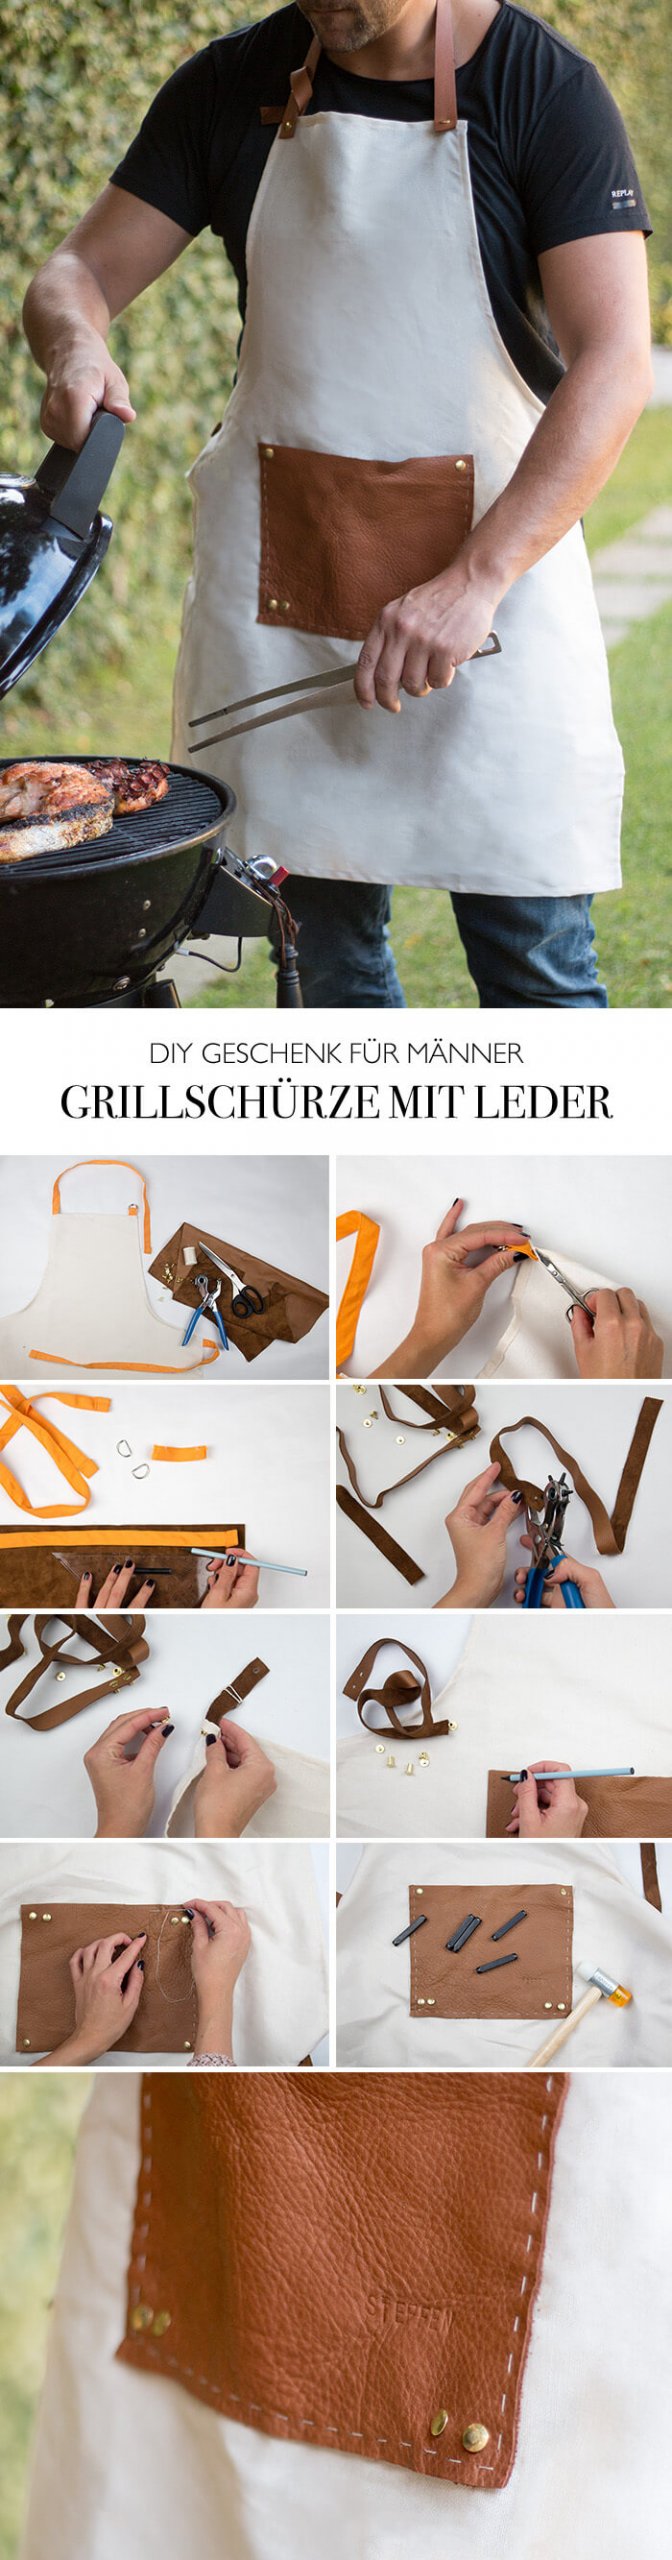 DIY Geschenk für Männer - Grillschürze selber machen mit Leder DIY Blog lindaloves.de